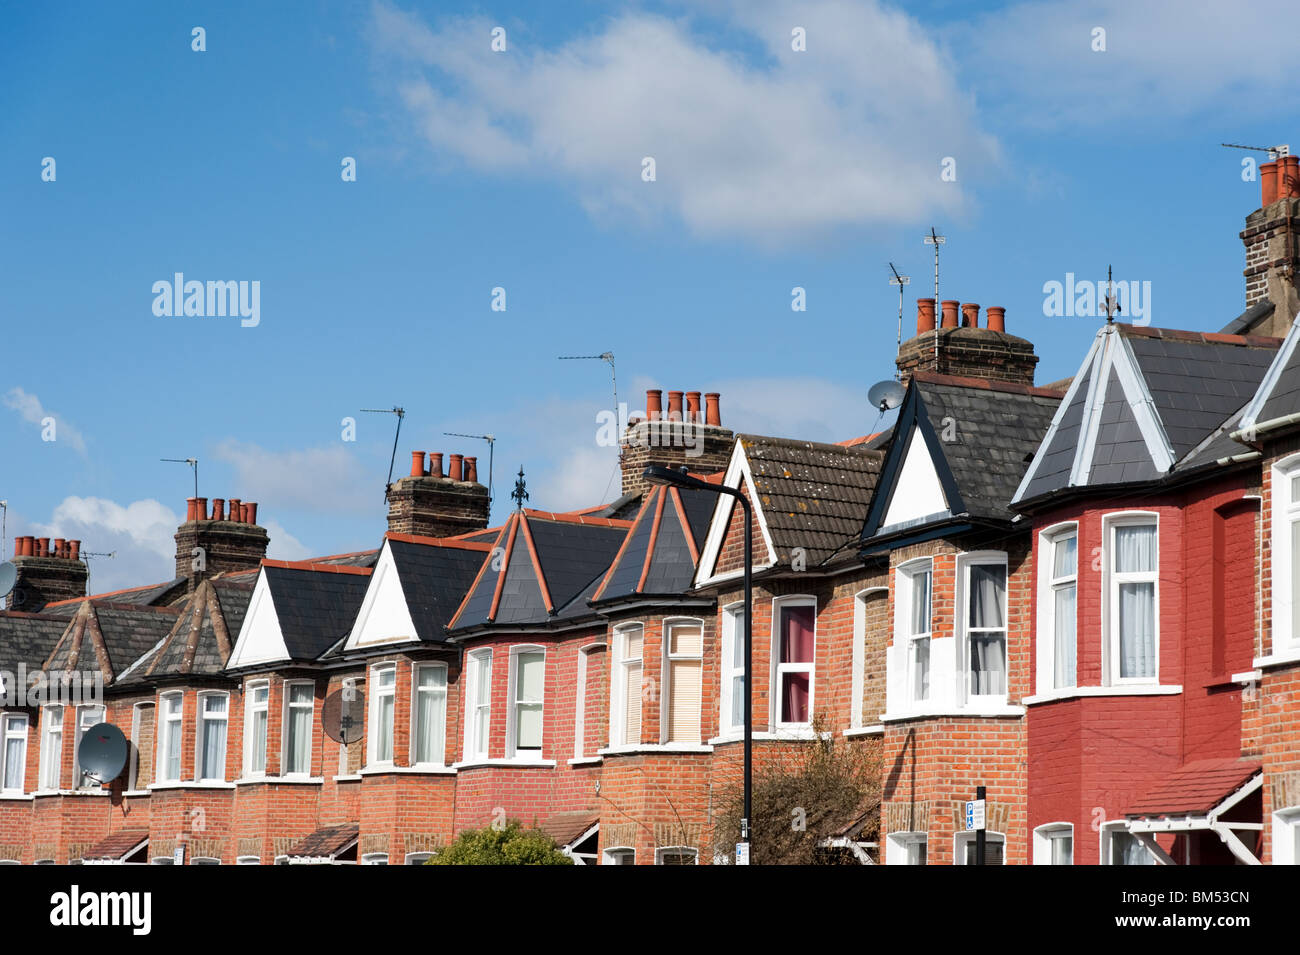 Fila di case a schiera in strada residenziale, London, England, Regno Unito Foto Stock